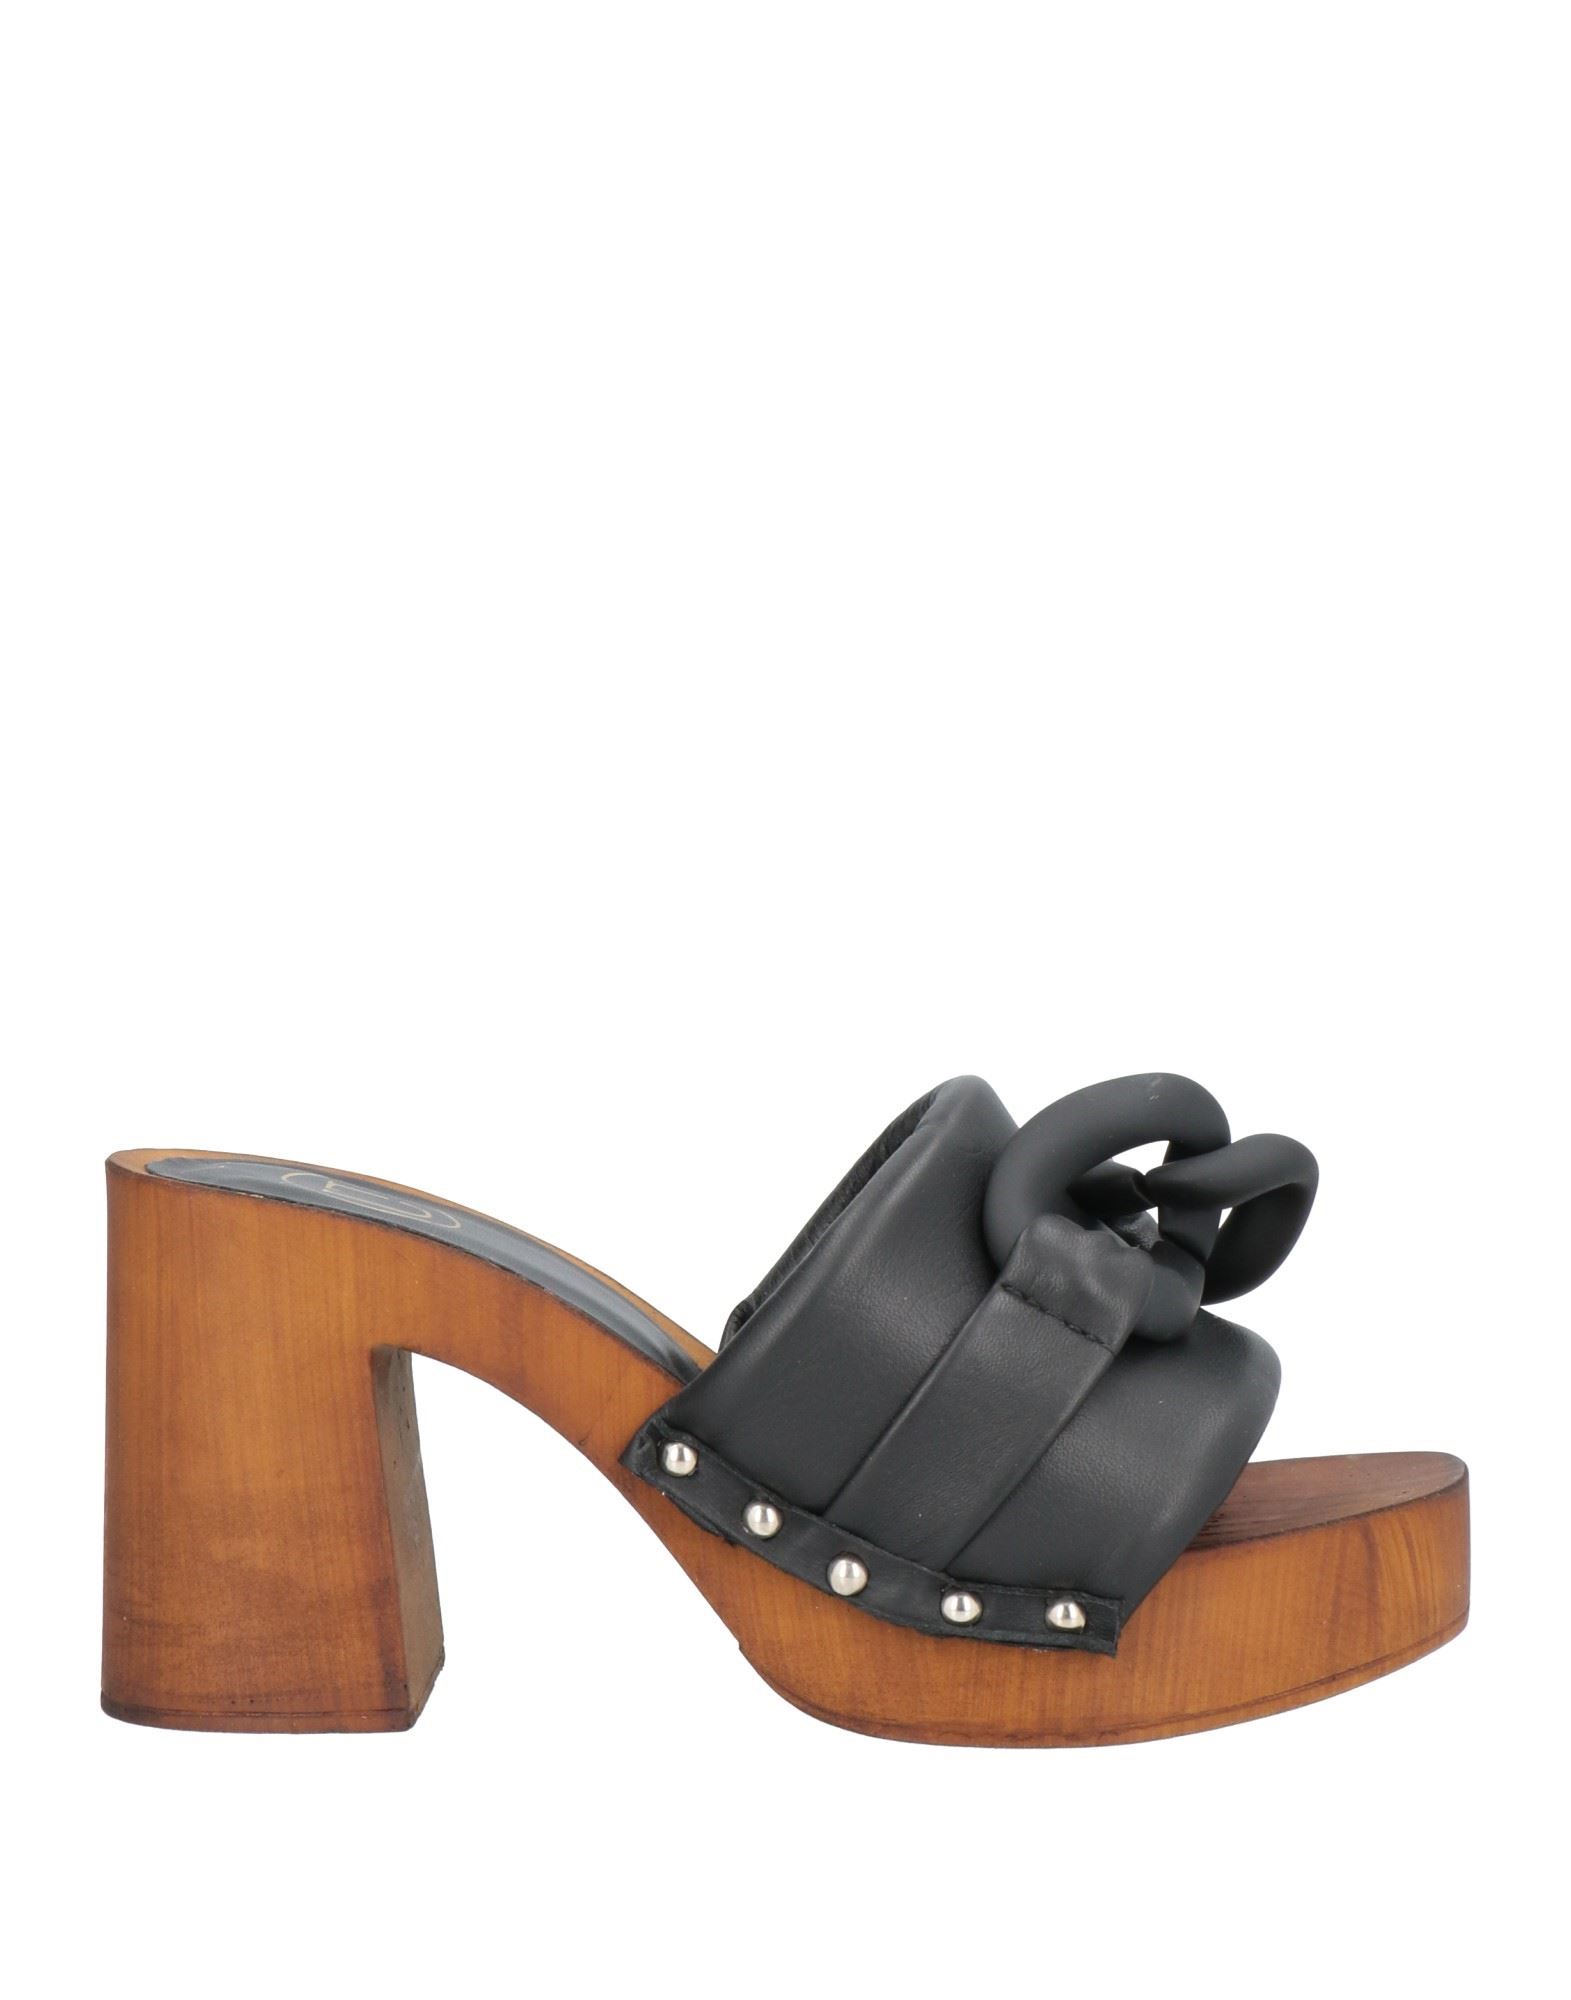 Unlace Woman Mules & Clogs Black Size 8 Soft Leather